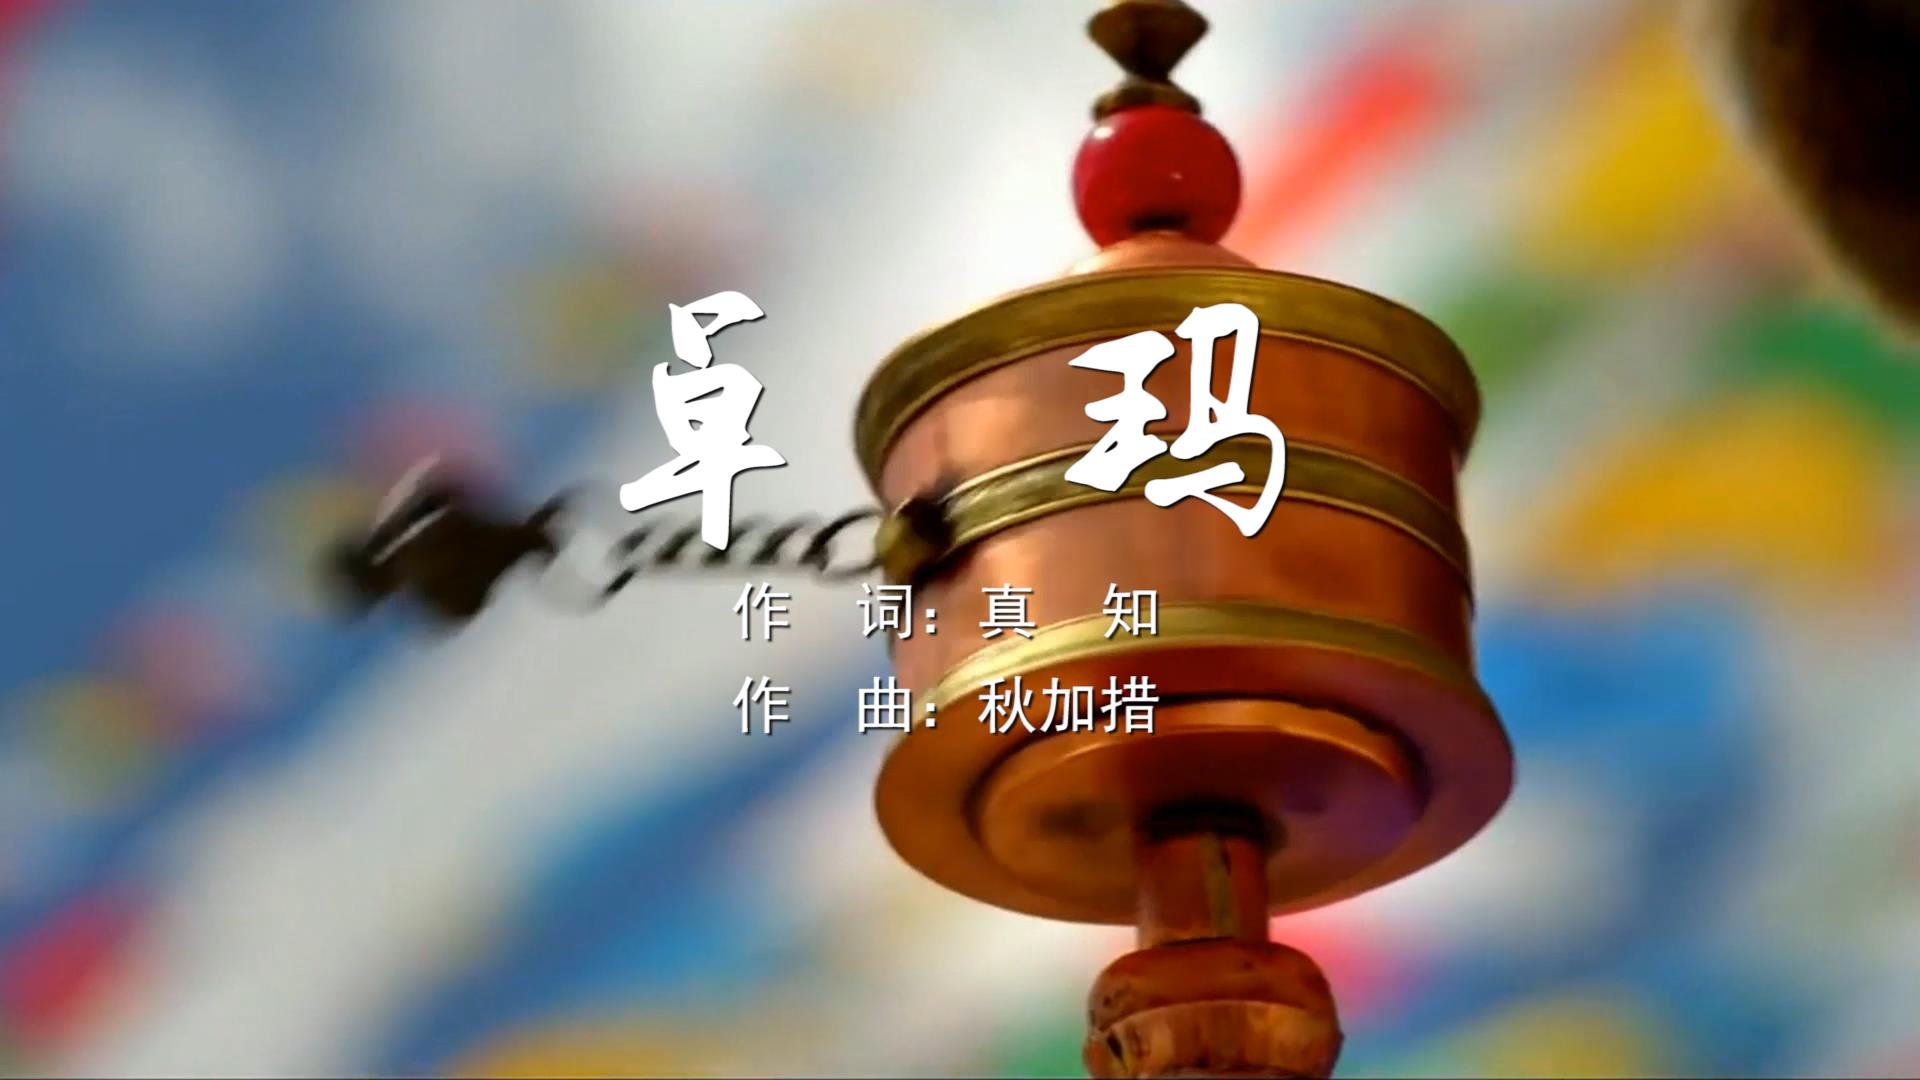 卓玛 藏族歌舞MV字幕配乐伴奏舞台演出LED背景大屏幕视频素材TV